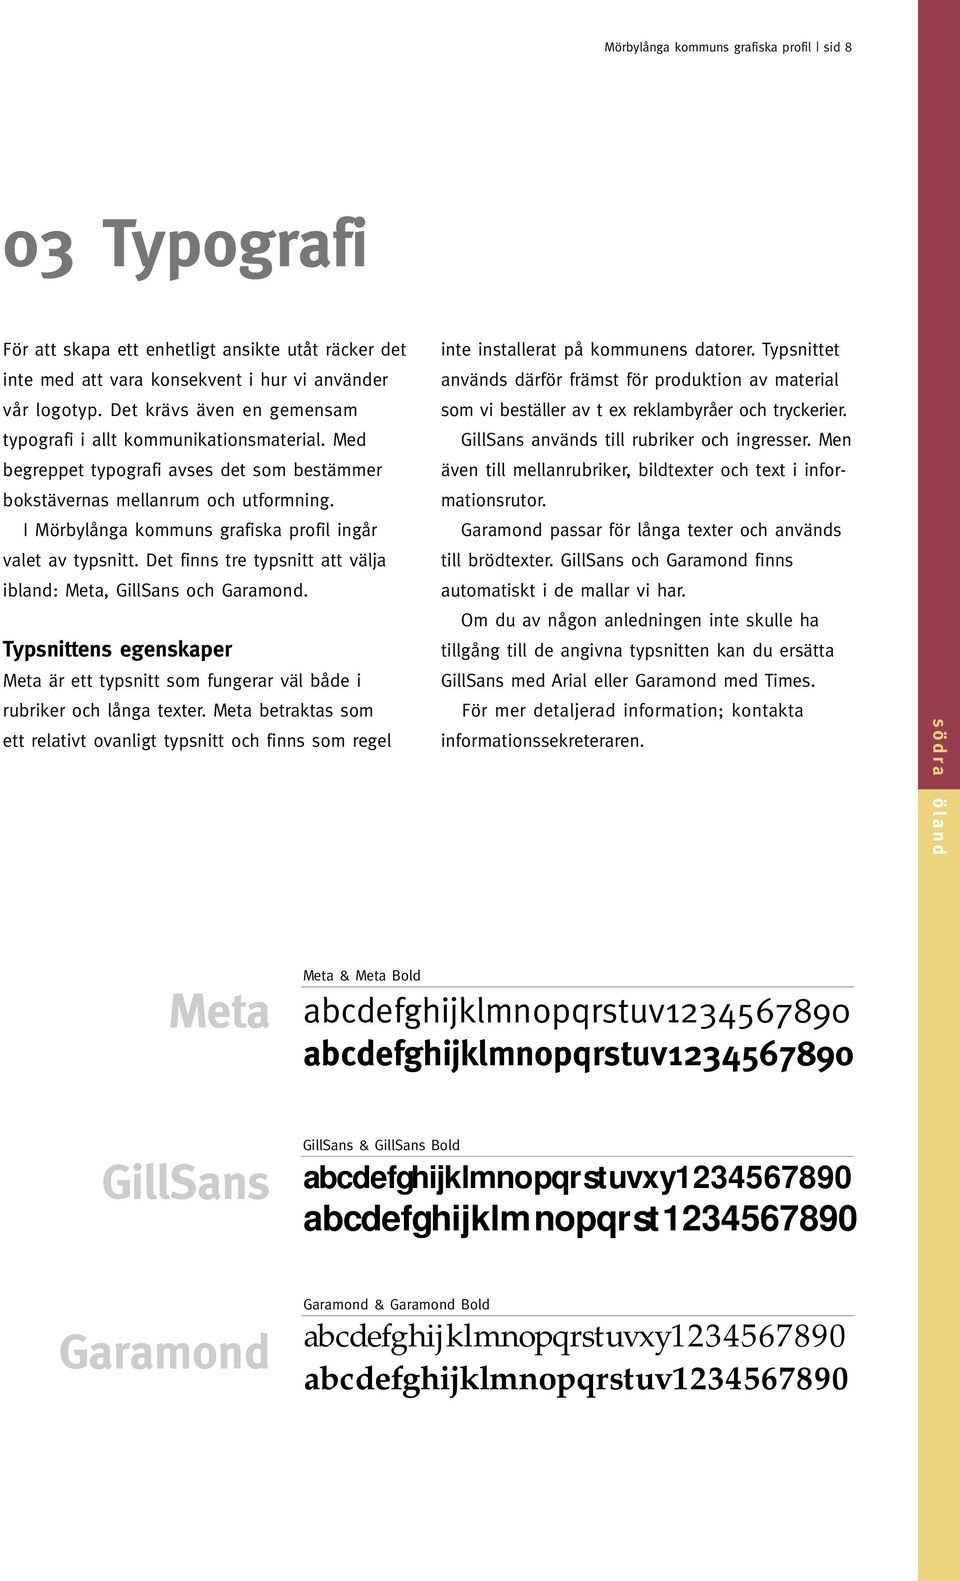 I Mörbylånga kommuns grafiska profil ingår valet av typsnitt. Det finns tre typsnitt att välja ibland: Meta, GillSans och Garamond.